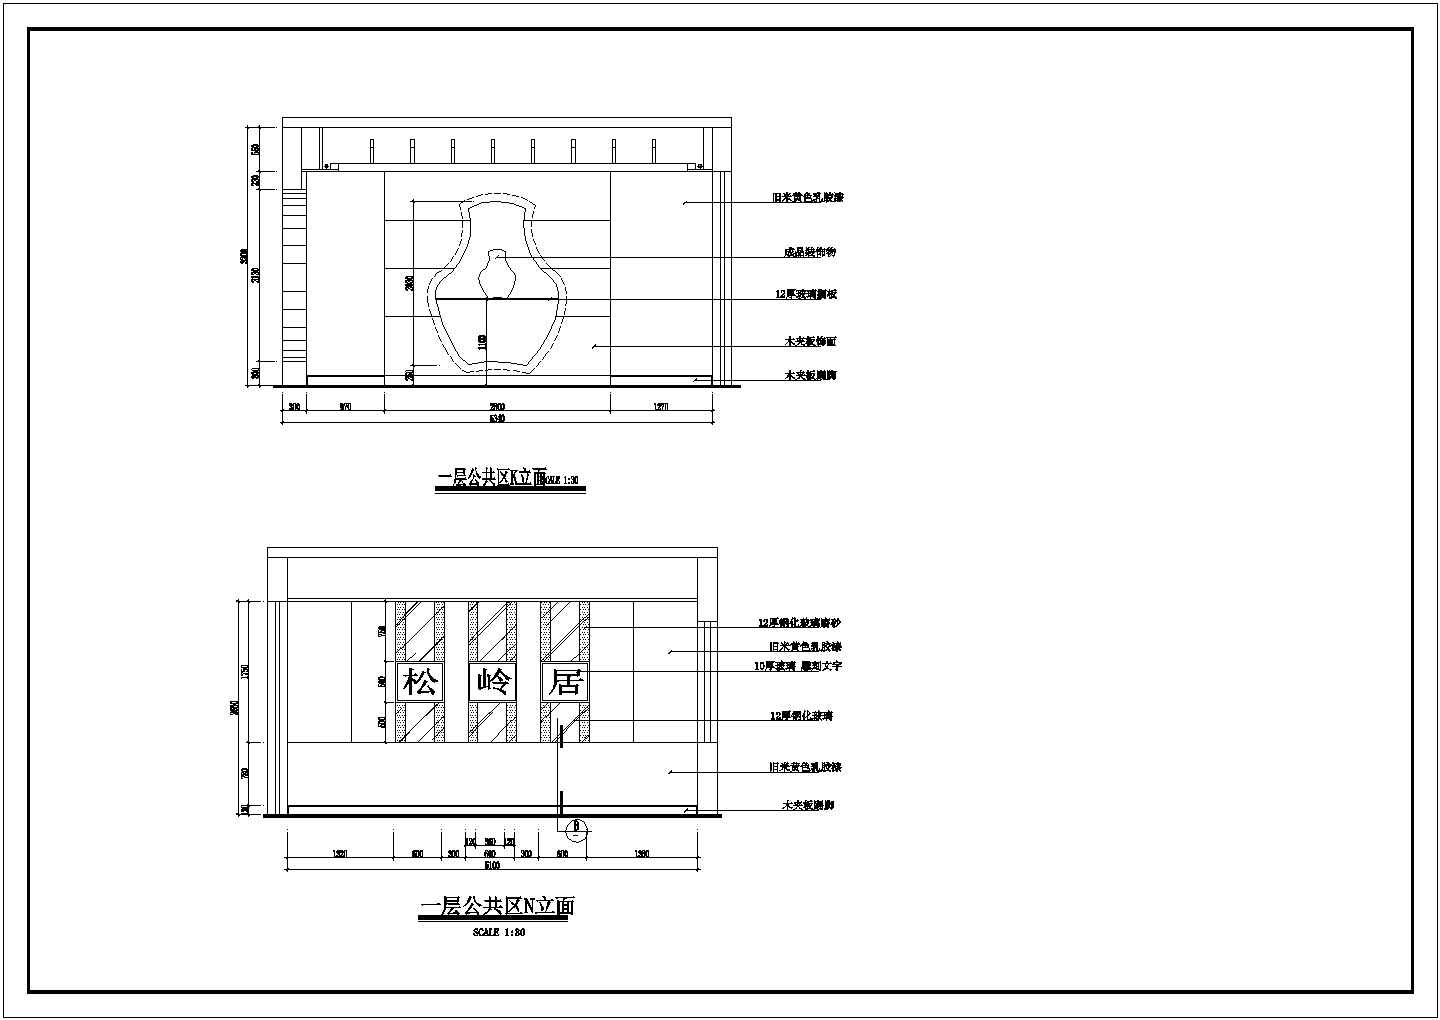 松岭居餐馆全套装修设计CAD图纸